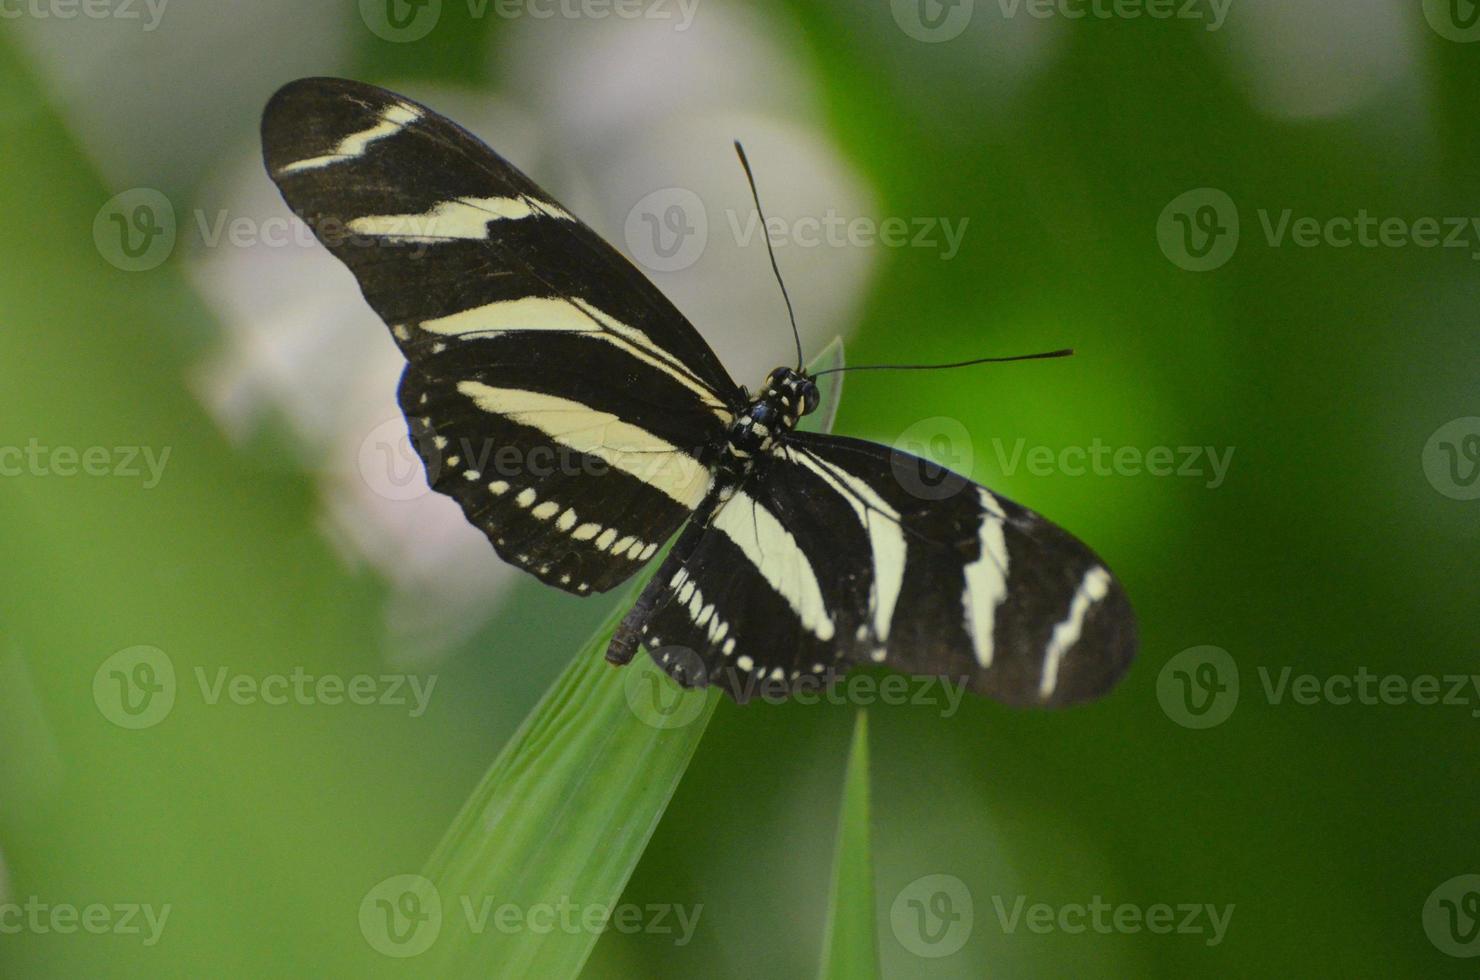 mooie spanwijdte op deze zwart-witte zebravlinder foto